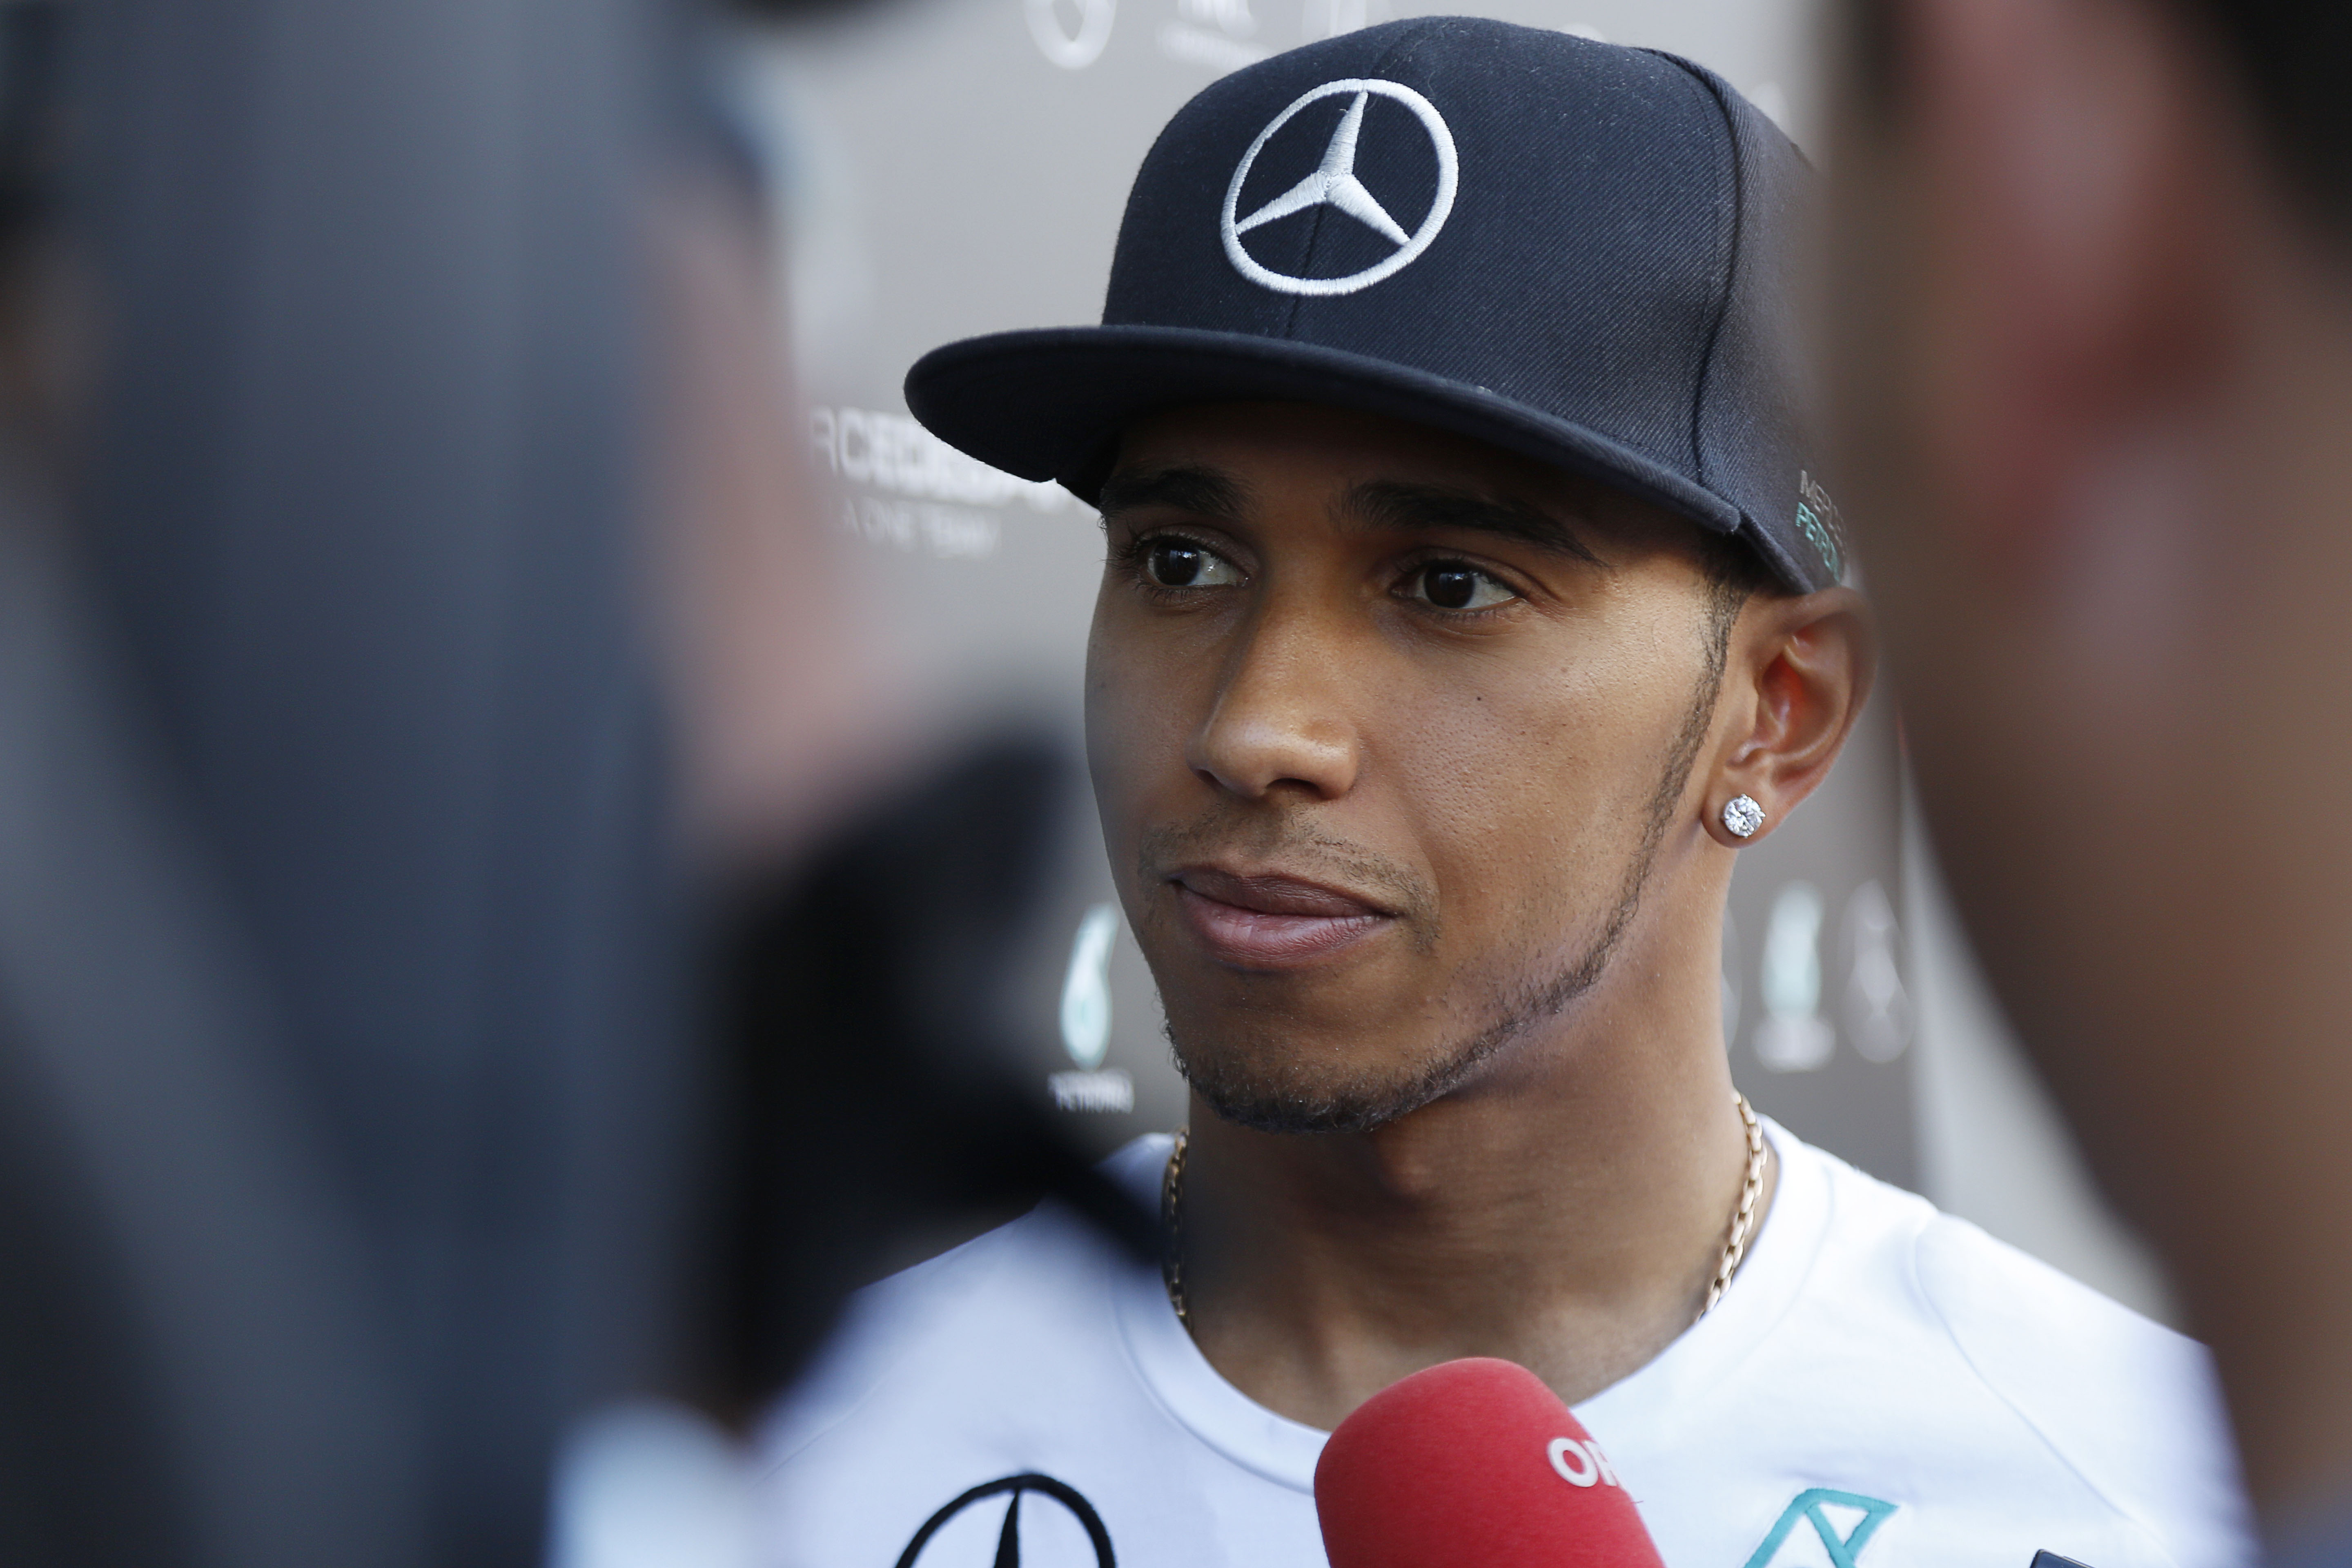 Mercedes spreekt met Hamilton over contractverlenging